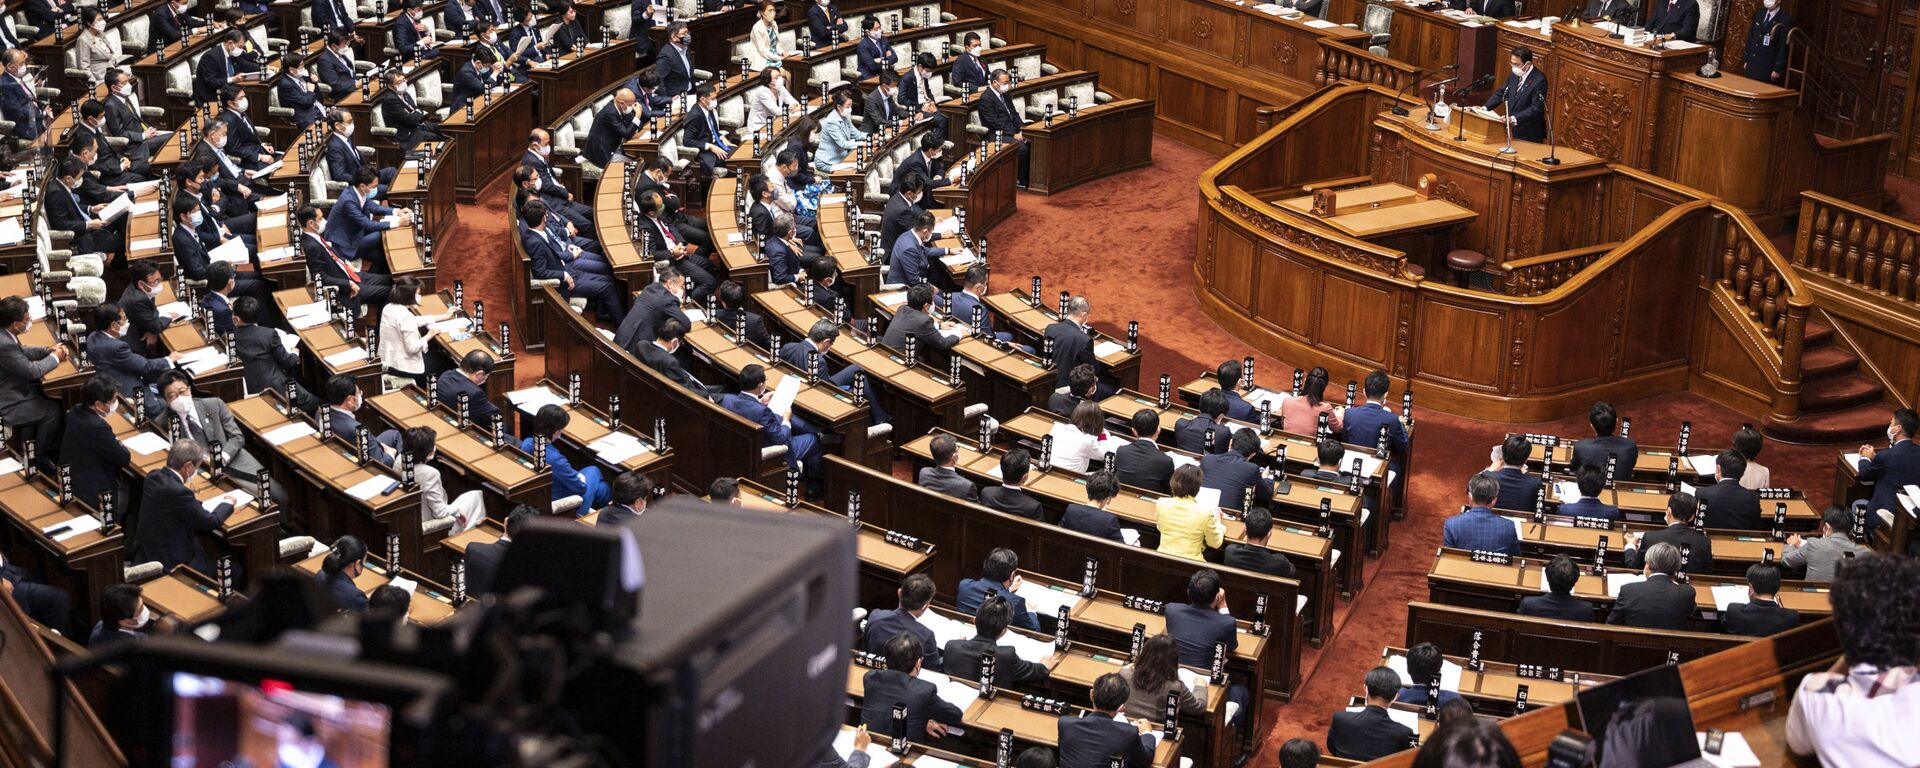 Заседание нижней палаты парламента Японии  - Sputnik 日本, 1920, 19.11.2021